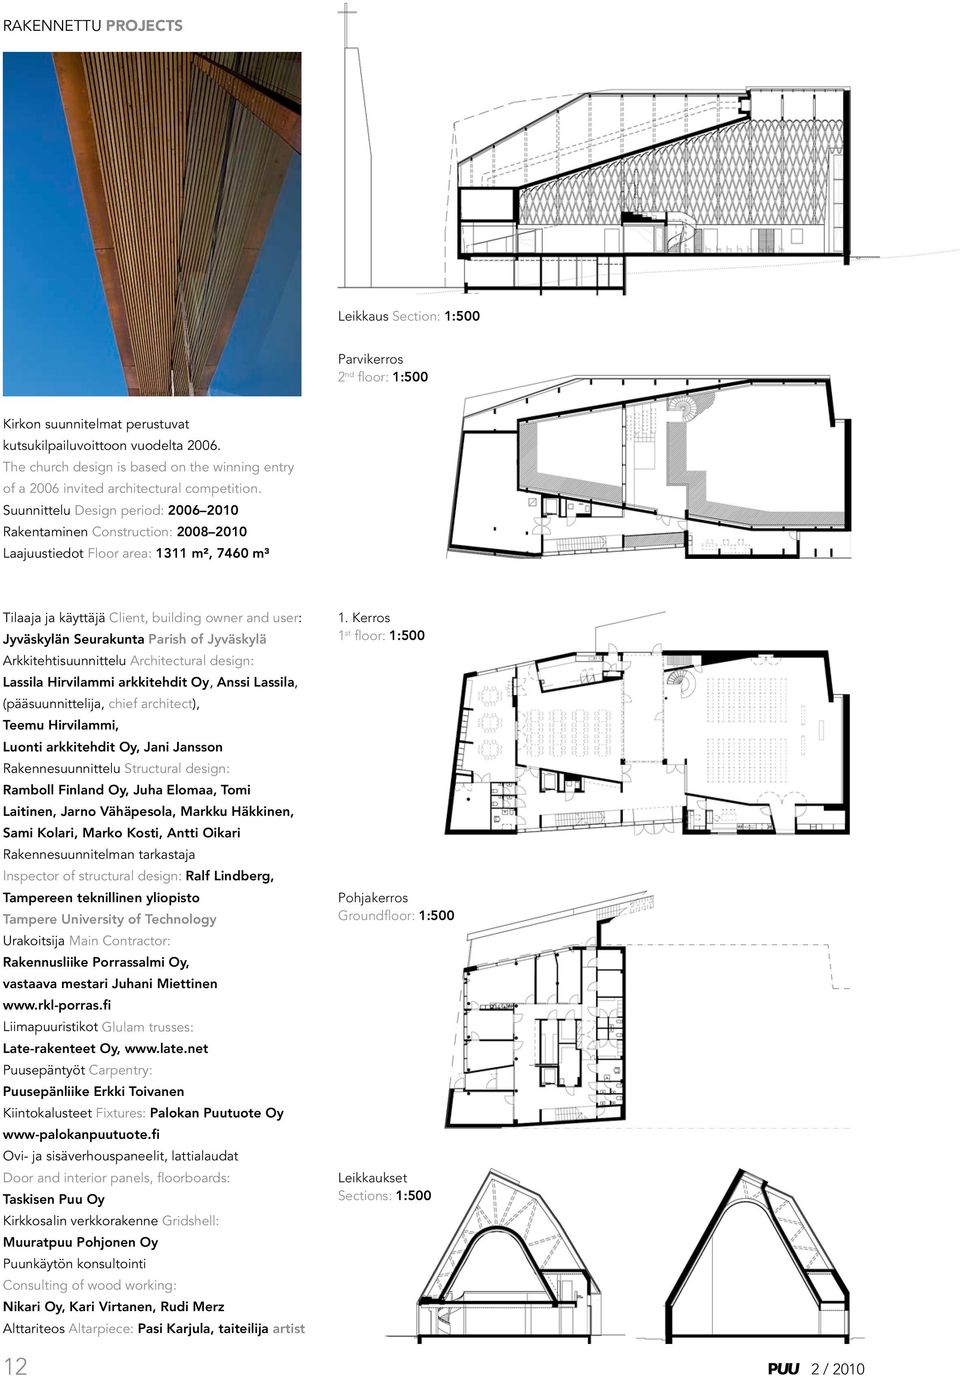 Suunnittelu Design period: 2006 2010 Rakentaminen Construction: 2008 2010 Laajuustiedot Floor area: 1311 m², 7460 m³ Tilaaja ja käyttäjä Client, building owner and user: Jyväskylän Seurakunta Parish